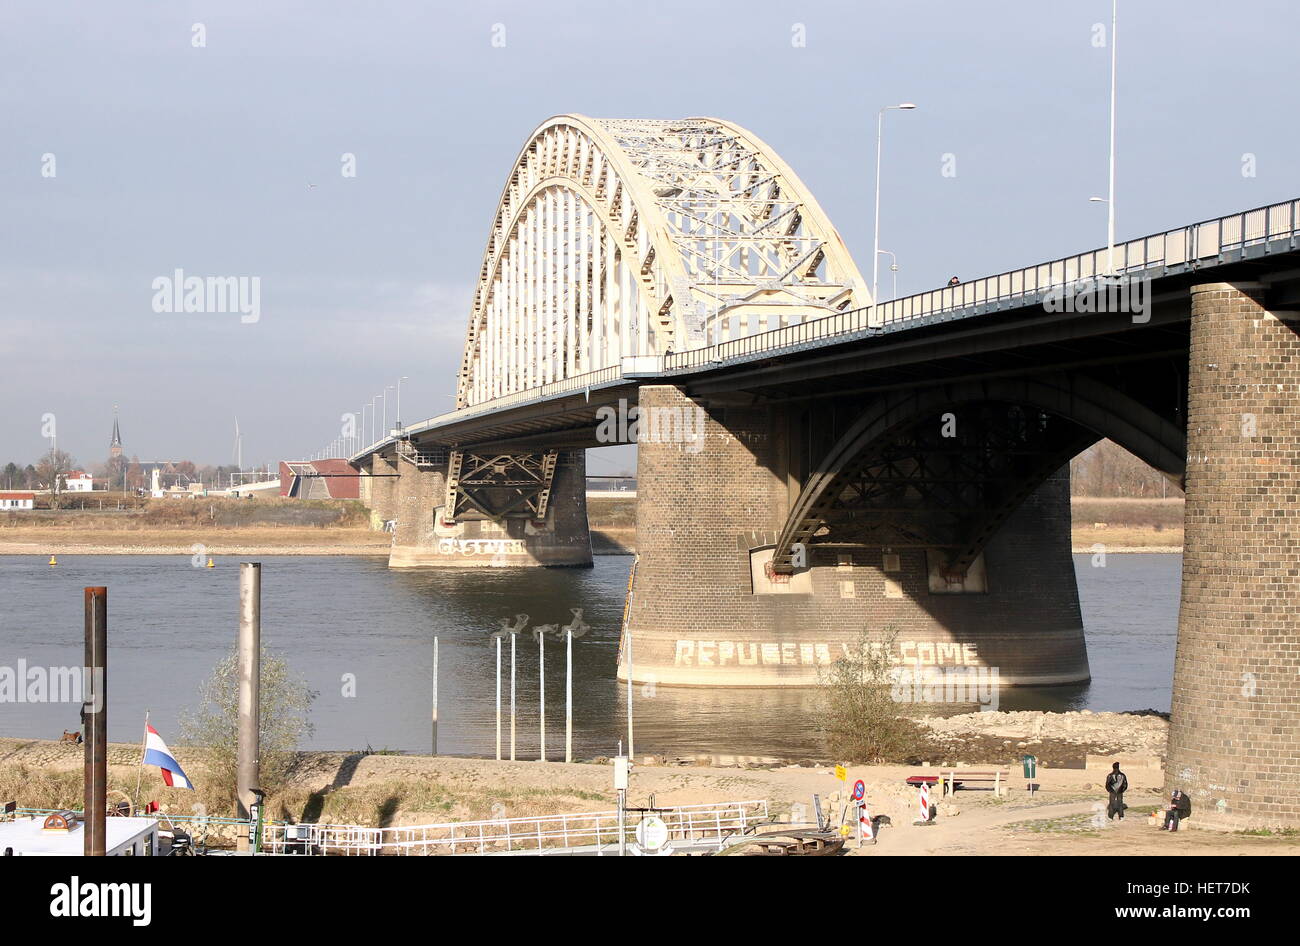 Waalbrug (1936), 600m long arch bridge over the Waal River in Nijmegen, Gelderland, Netherlands. Stock Photo